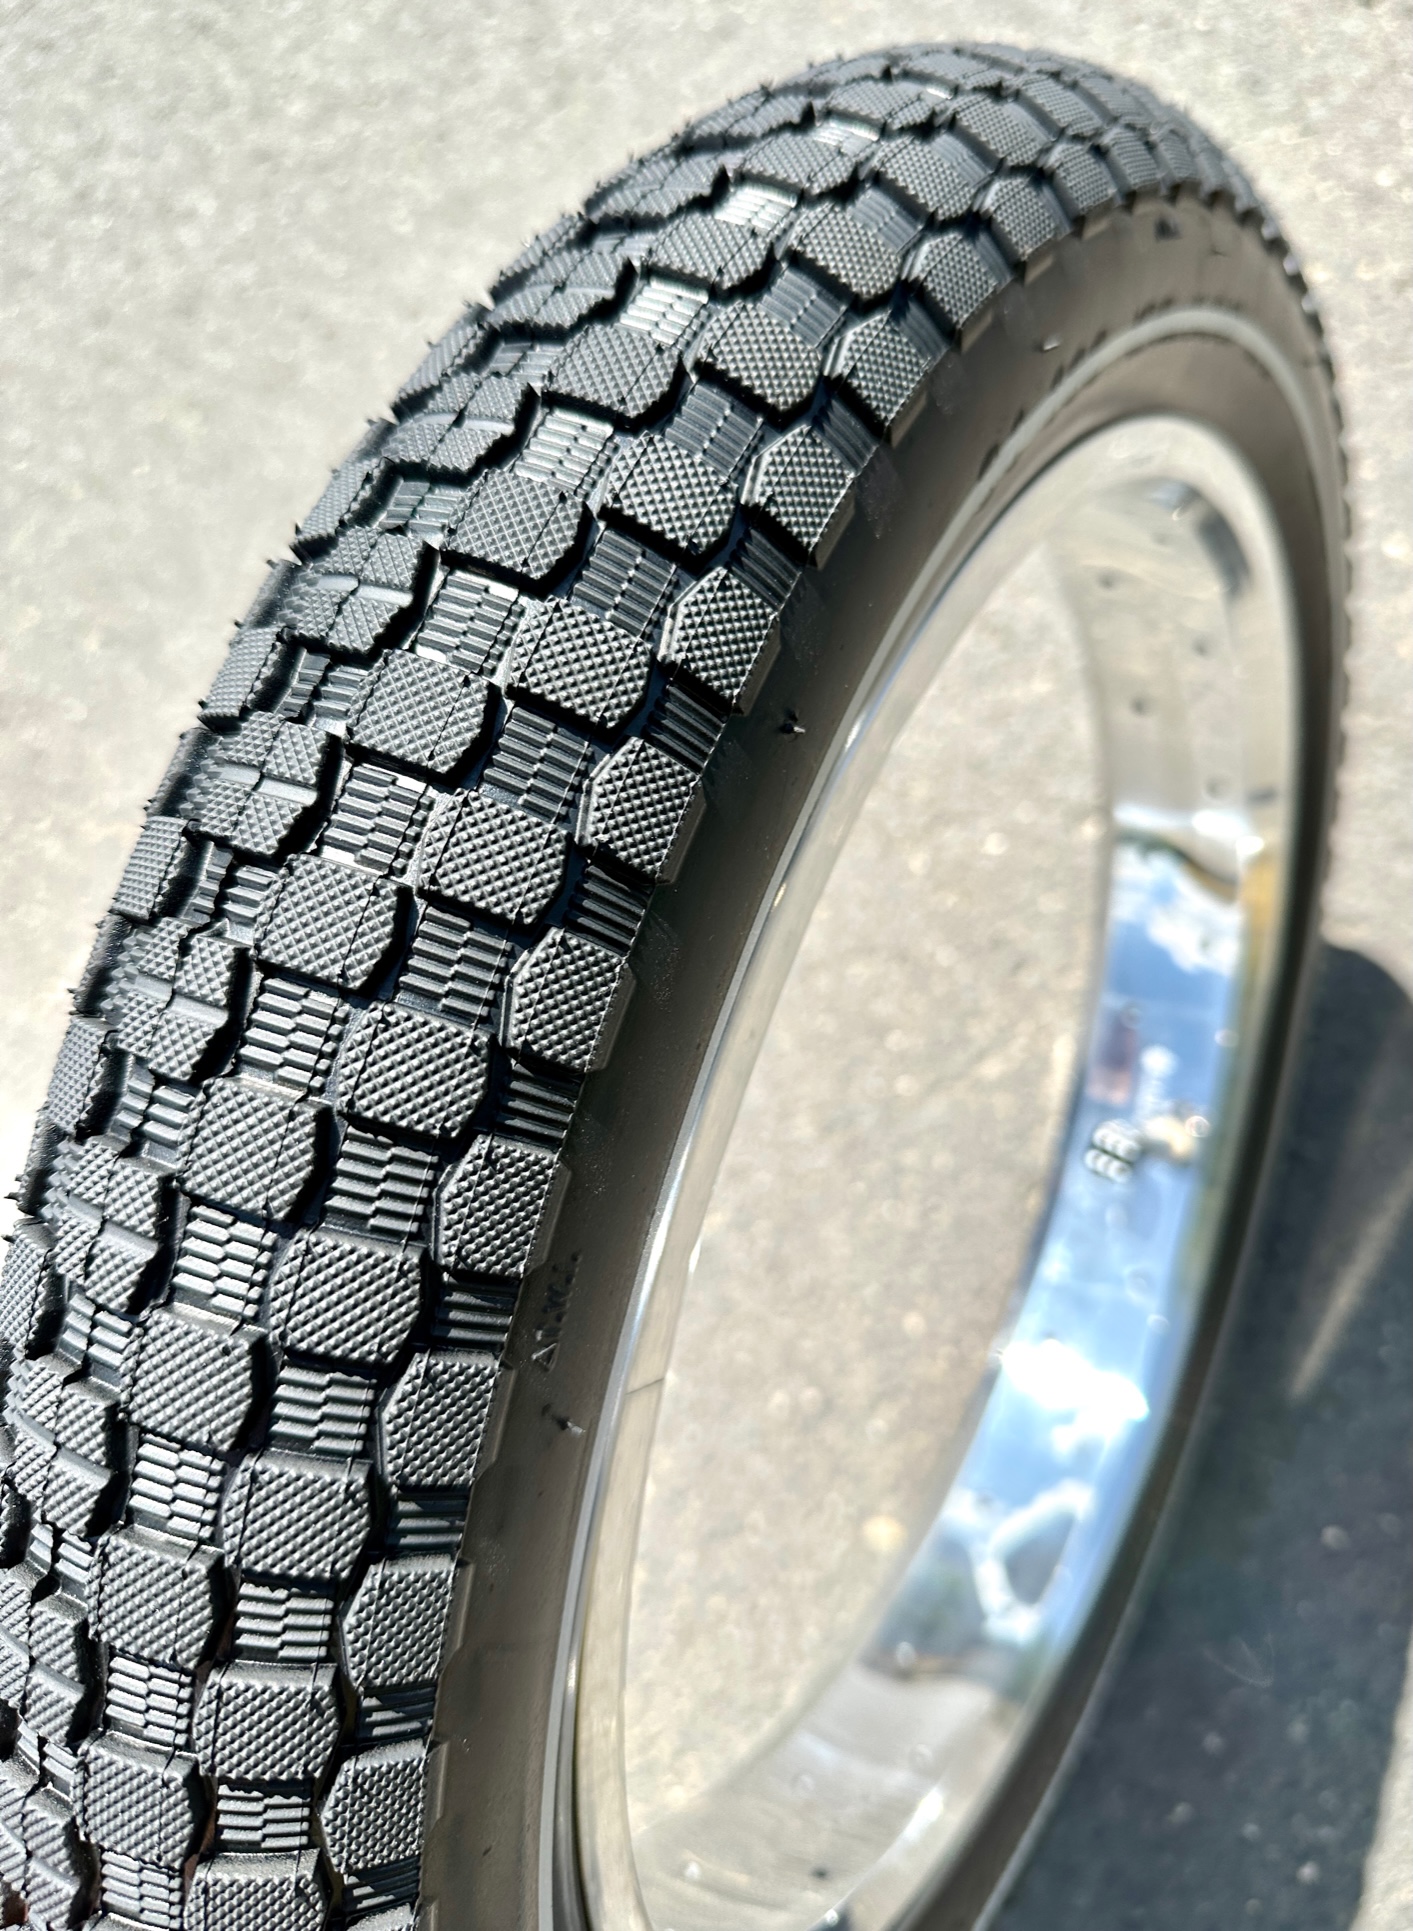 Kenda K-Rad tire 20 x 3.30 pure black